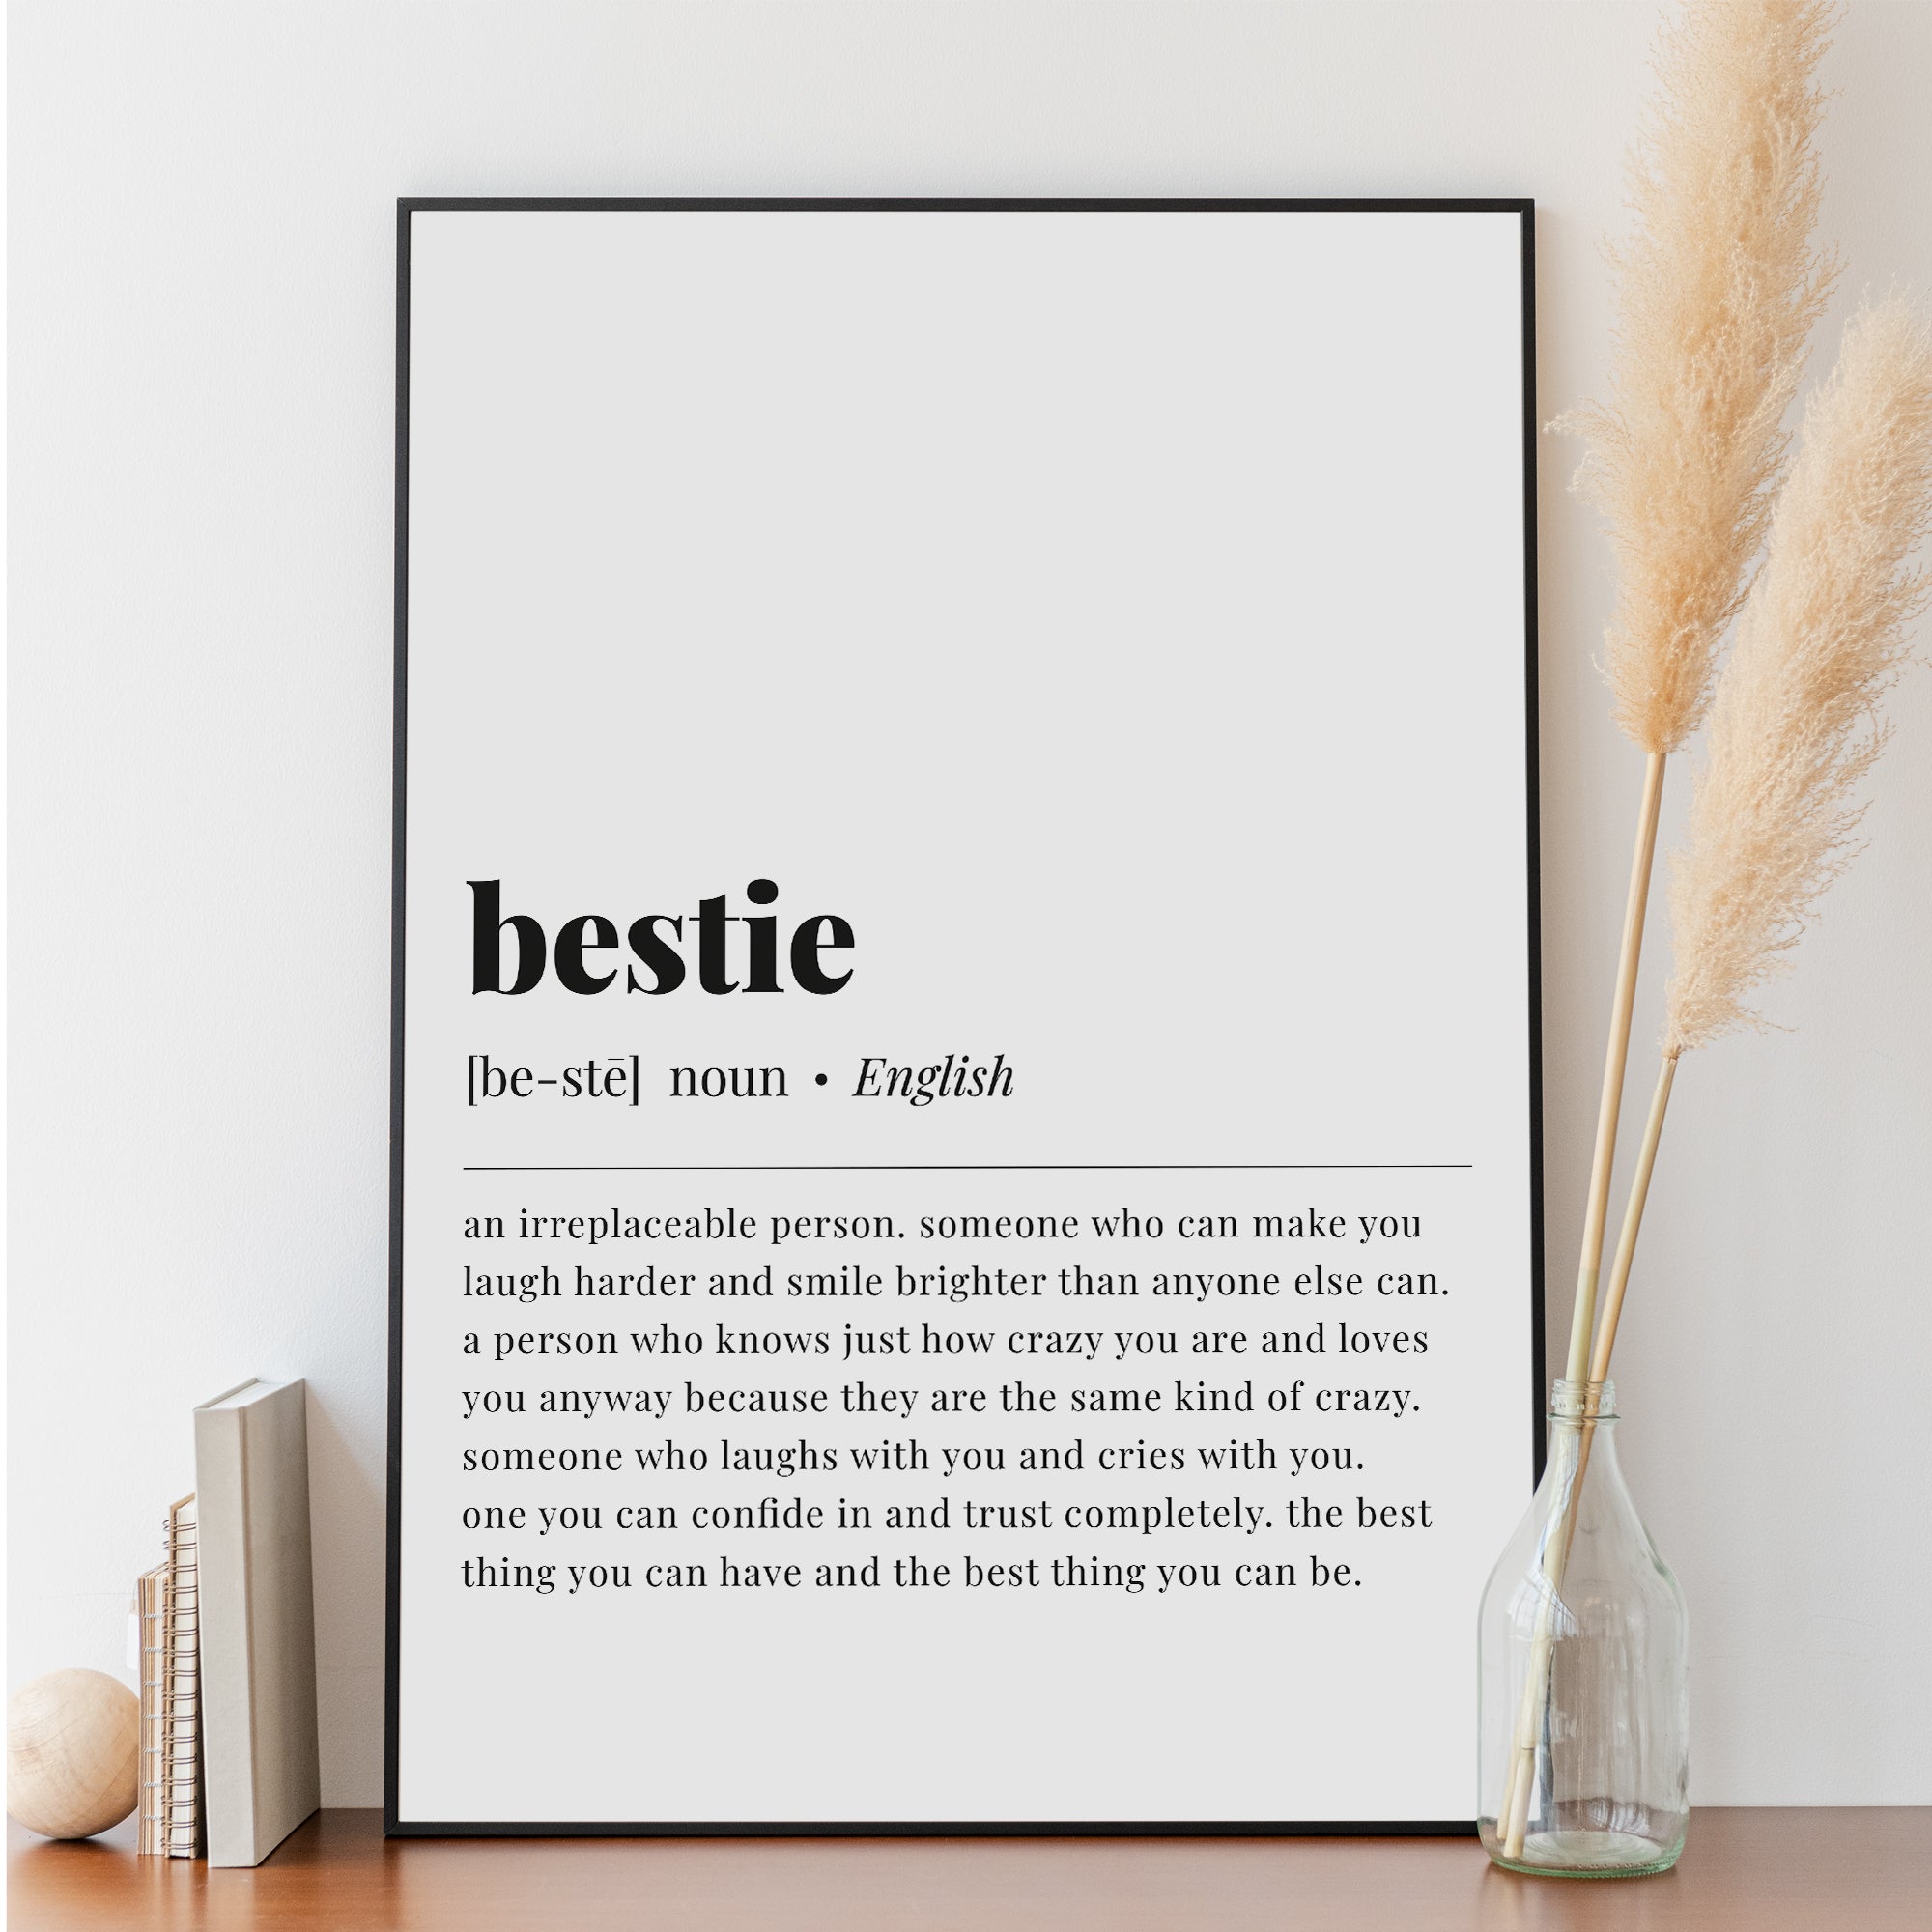 Bestie definition, Best friend definition, Bestie meaning, Friendship  Quote, Best friend Gift, Best Friend Quote, Deep meaningful friendship art  